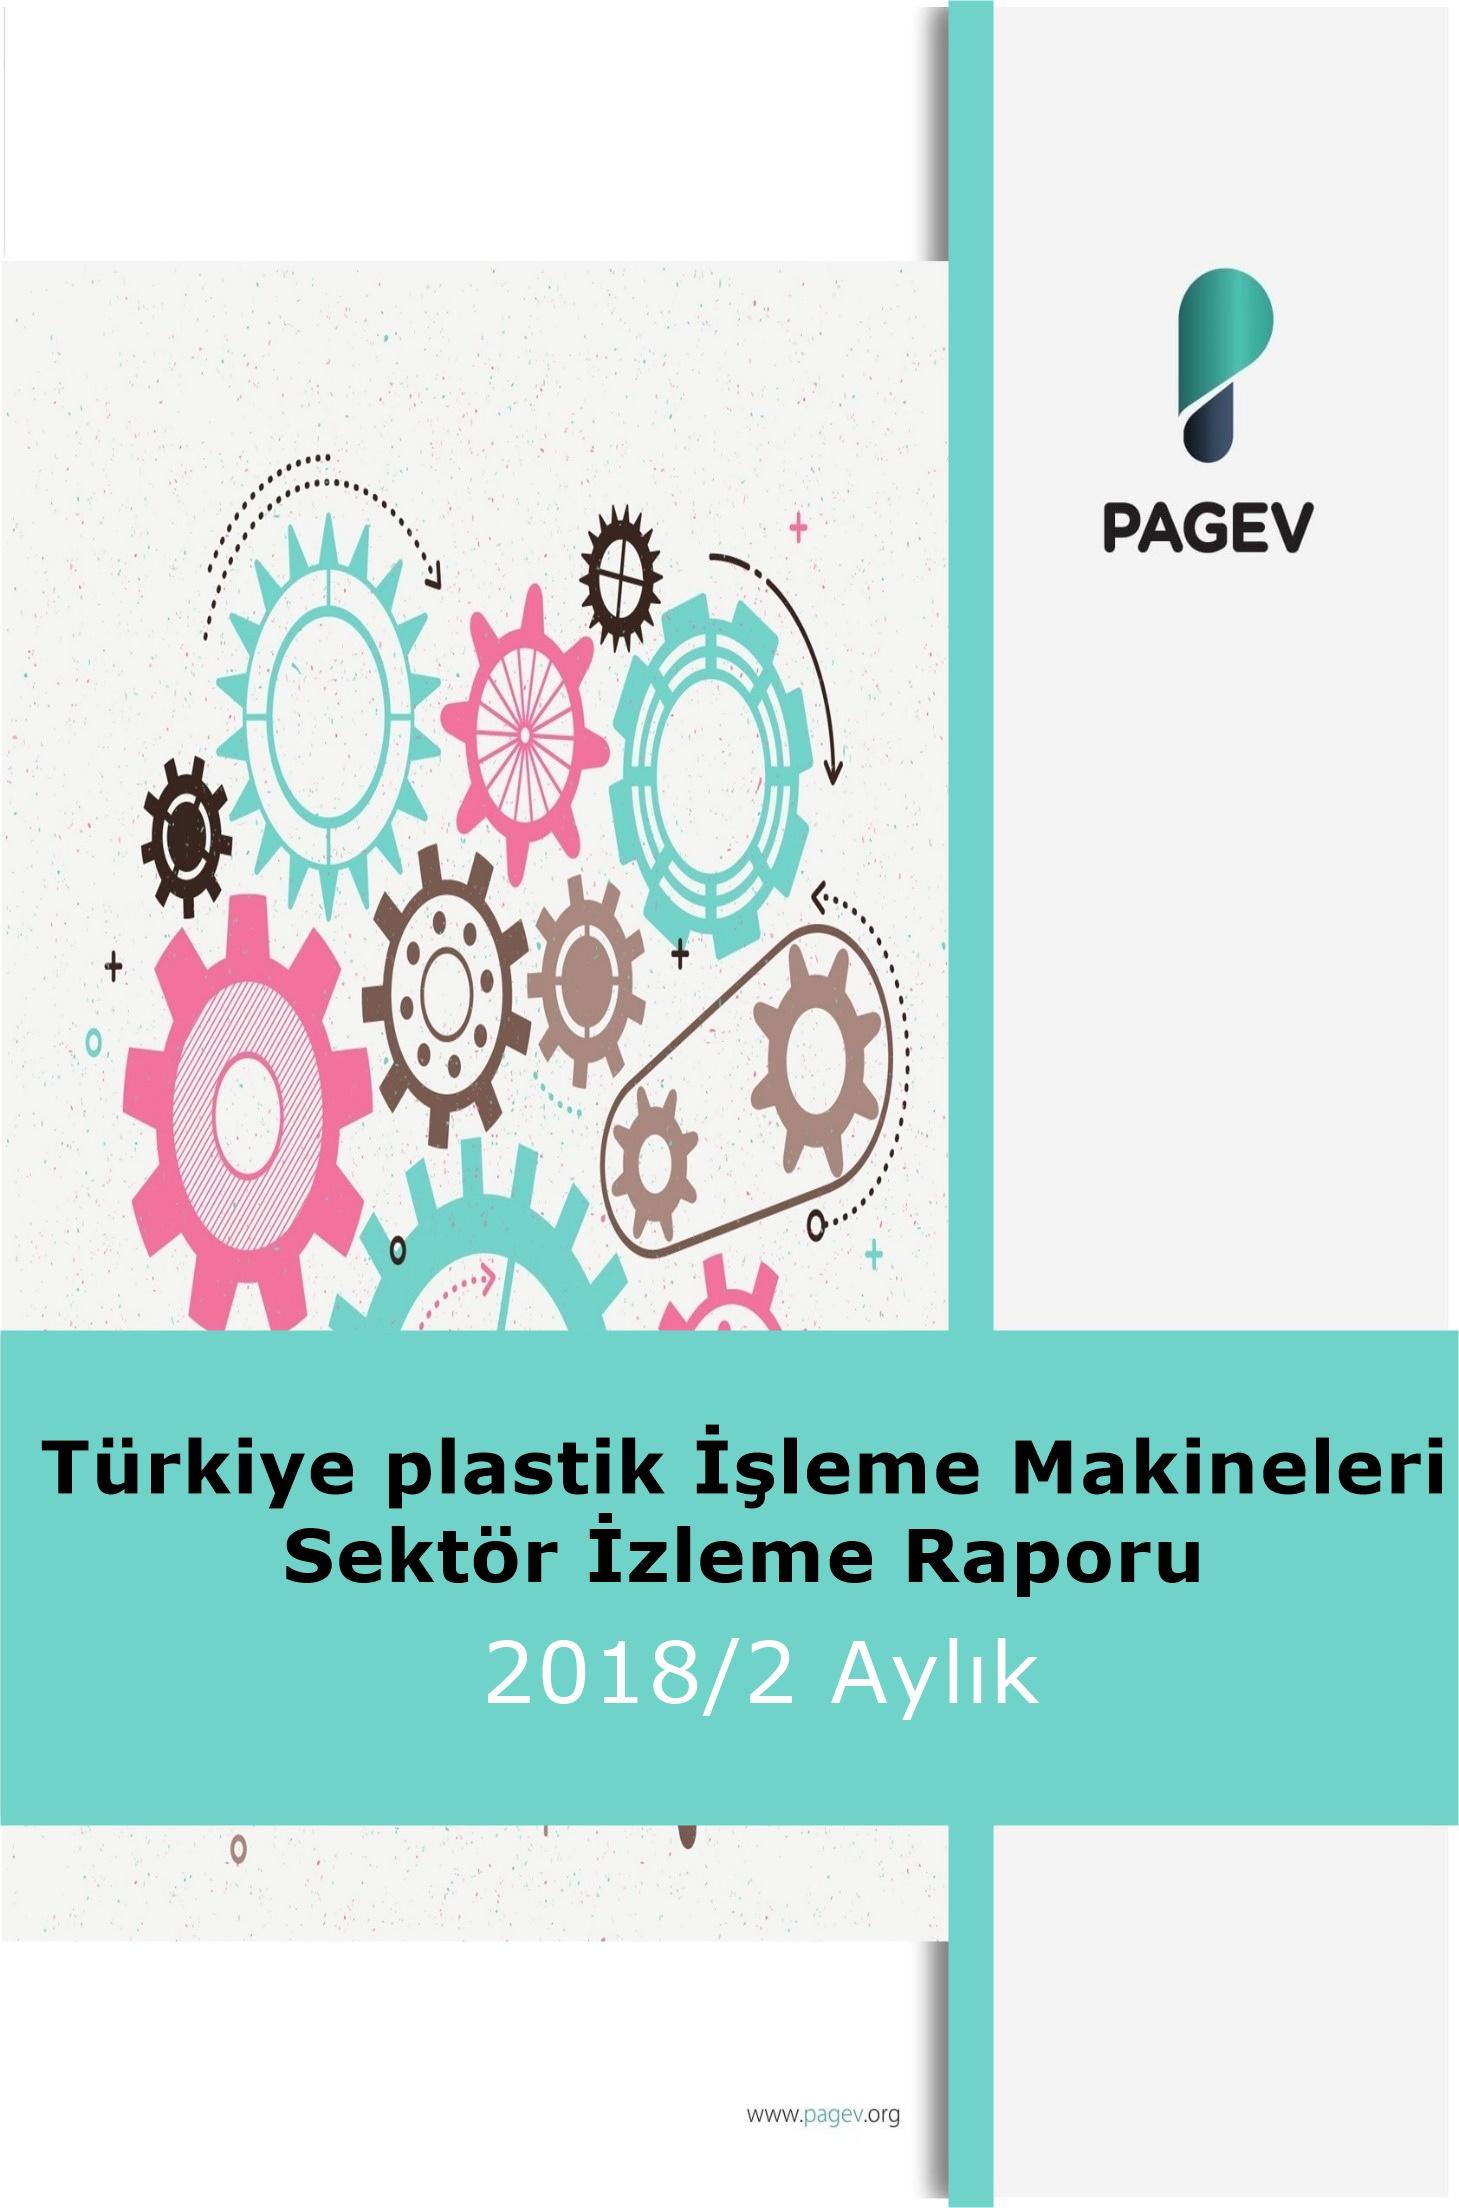 Türkiye Plastik İşleme Makineleri Sektör İzleme Raporu 2018/2 Aylık